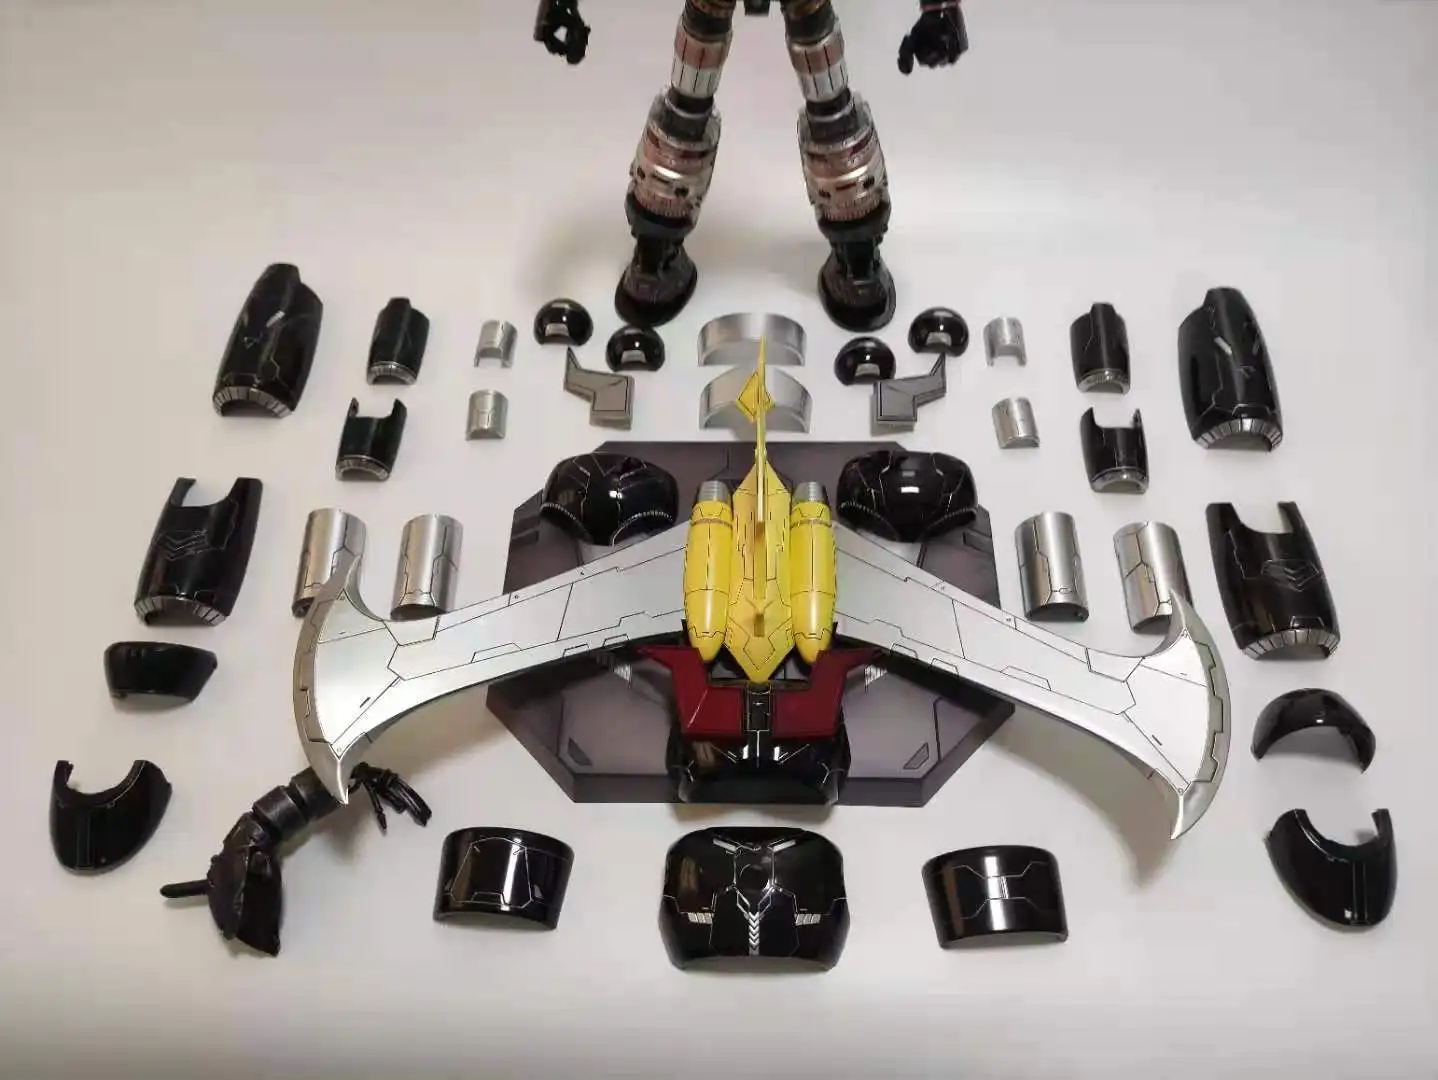 НОВИНКА В НАЛИЧИИ 37 см Трансформация King Arts Mazinger Z Oversize CR02, CR-02, основной черный цвет, фигурка КО, игрушки-роботы 5